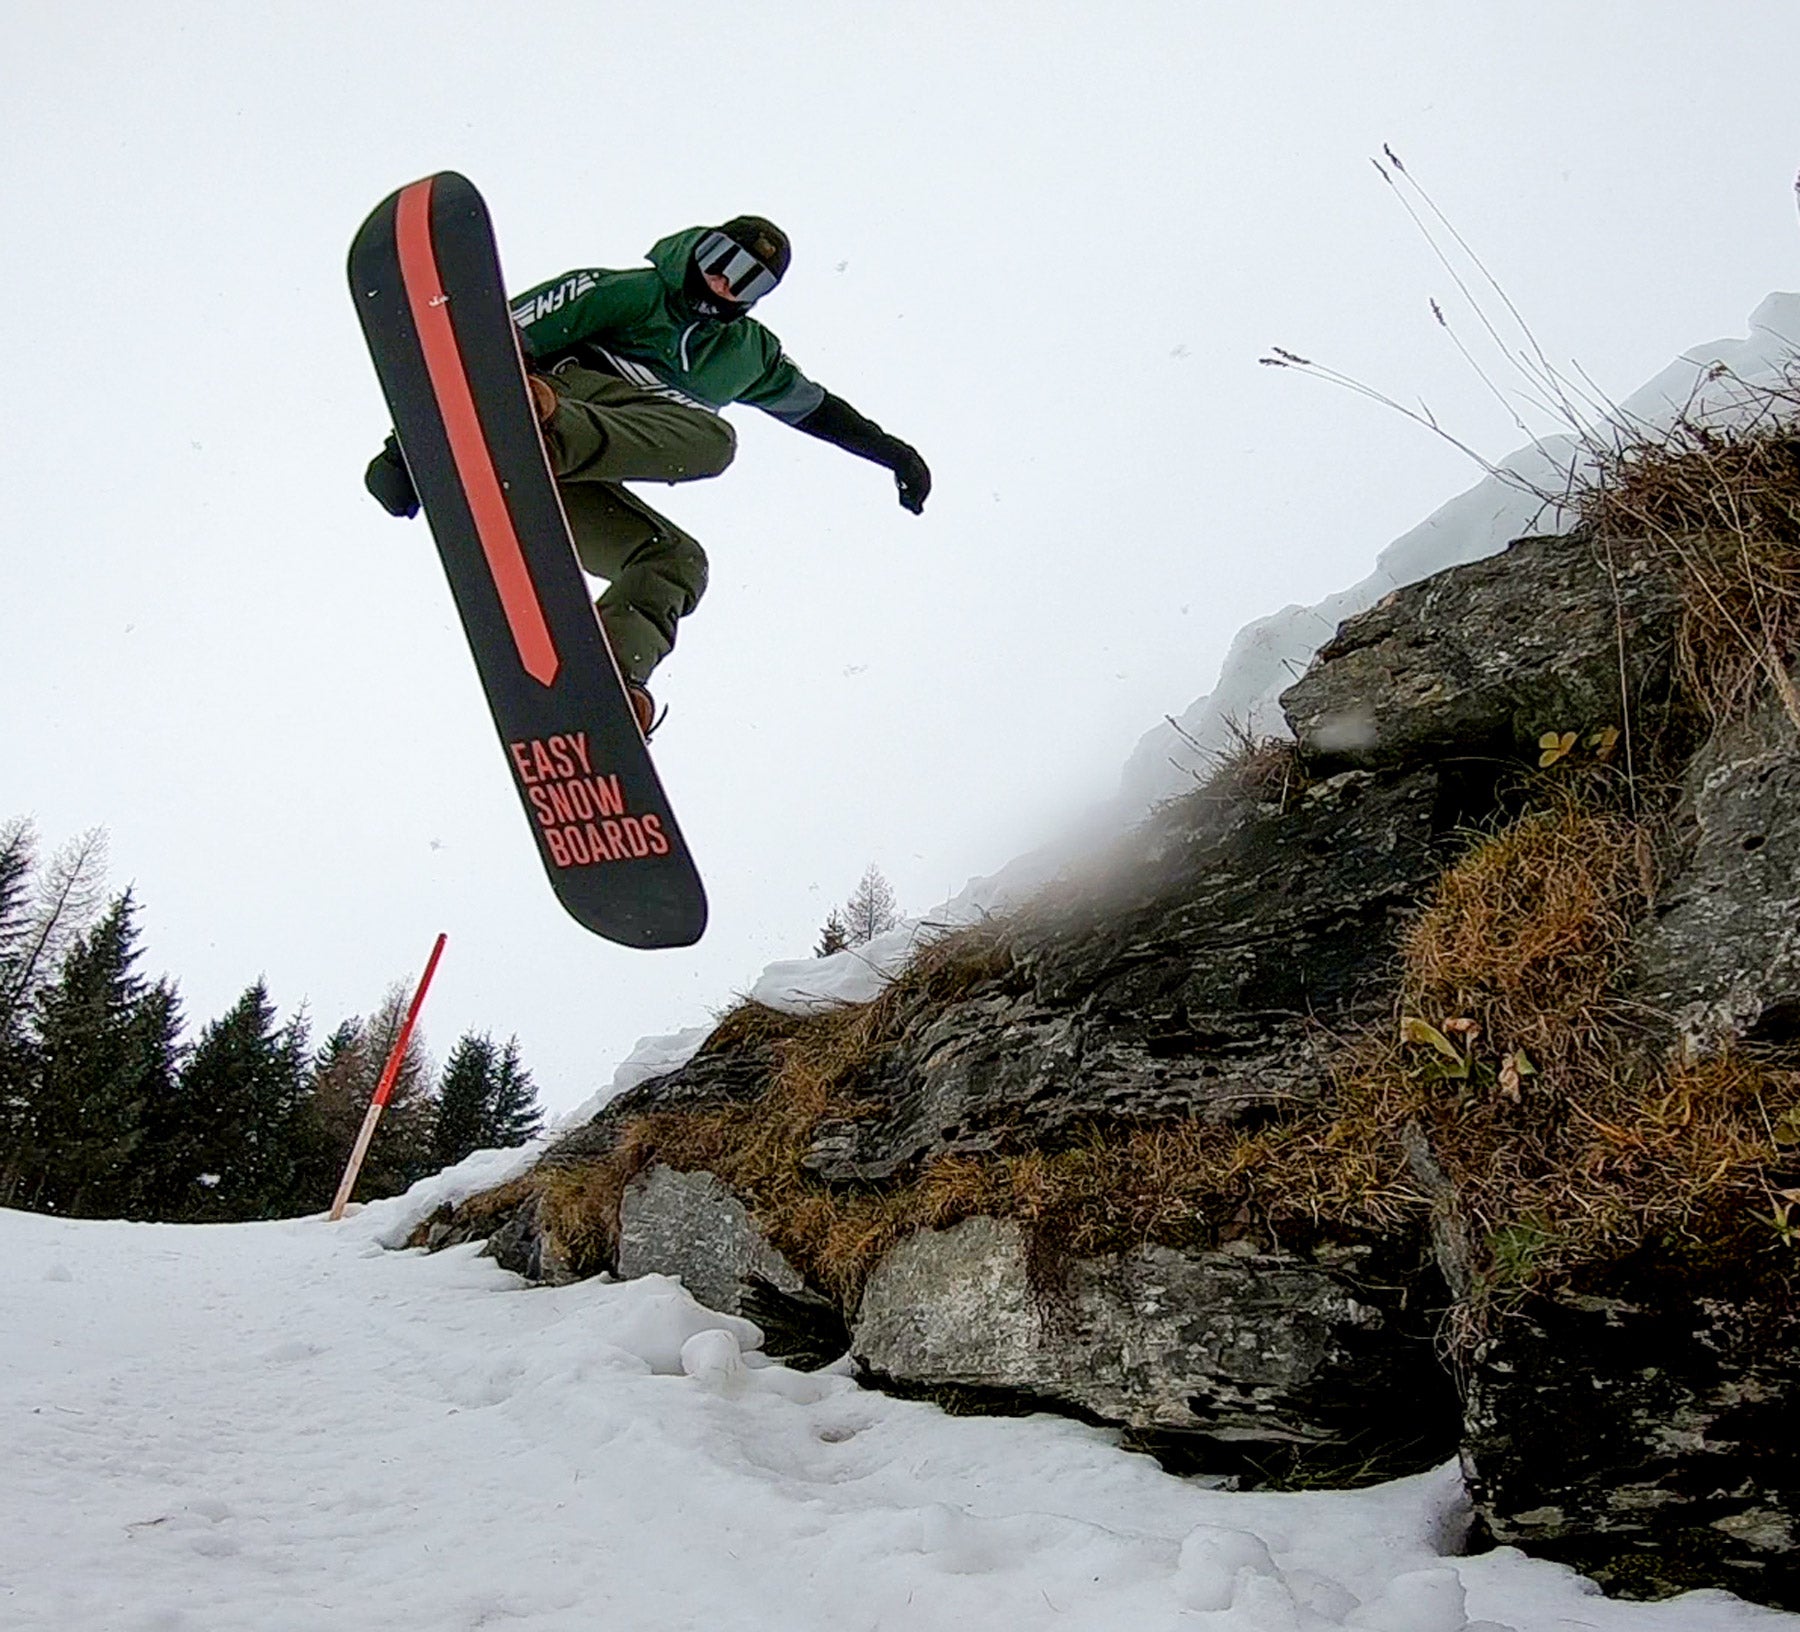 Choisir un snowboard à sa taille.